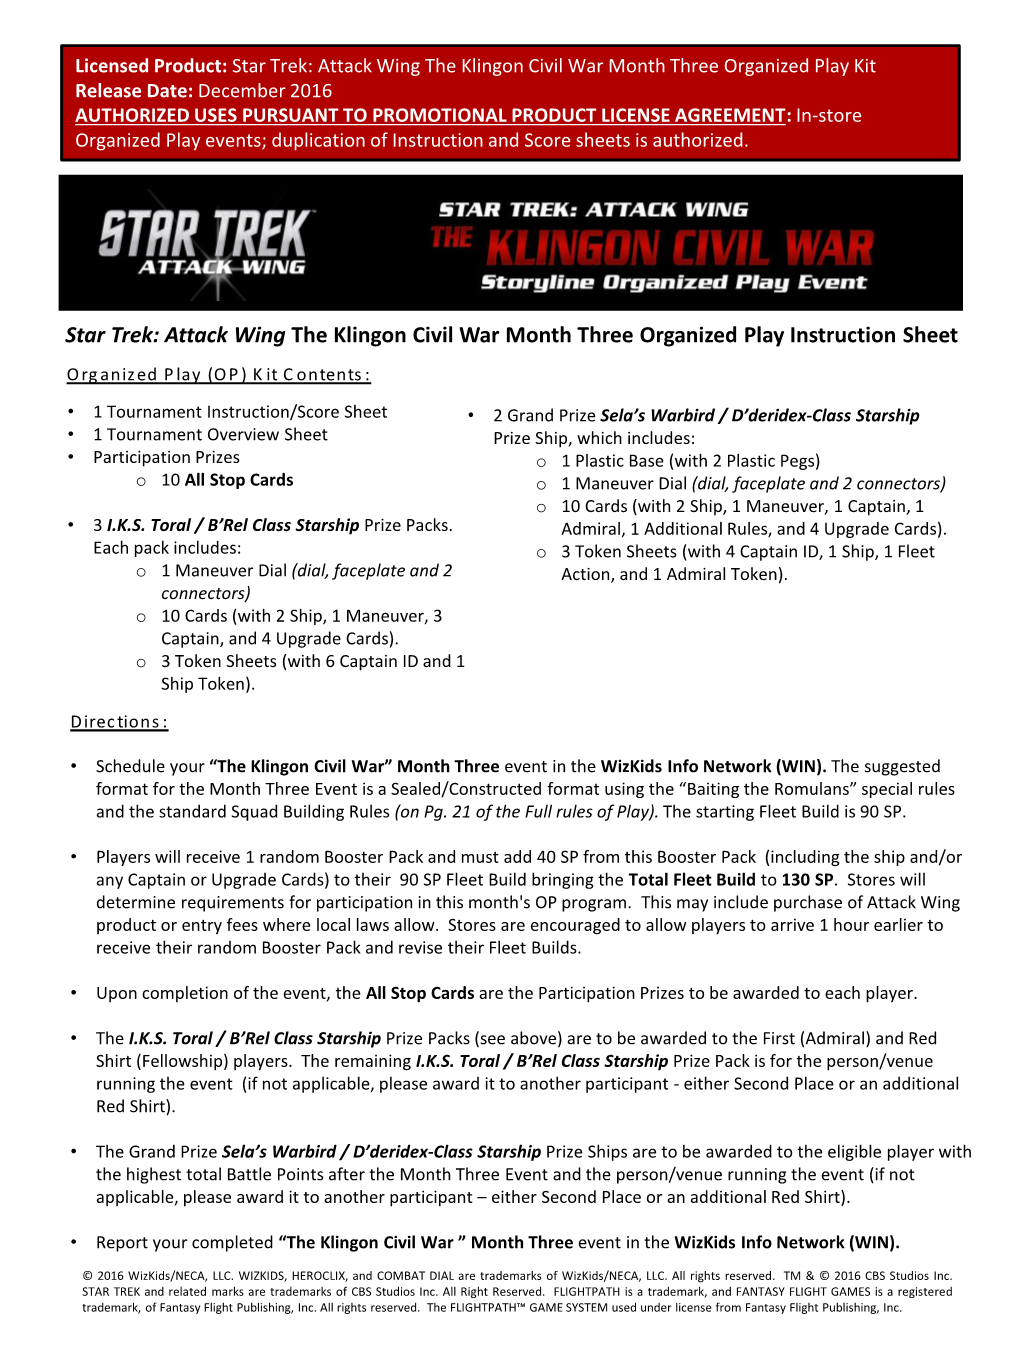 “Baiting the Romulans” Instruction/Score Sheet